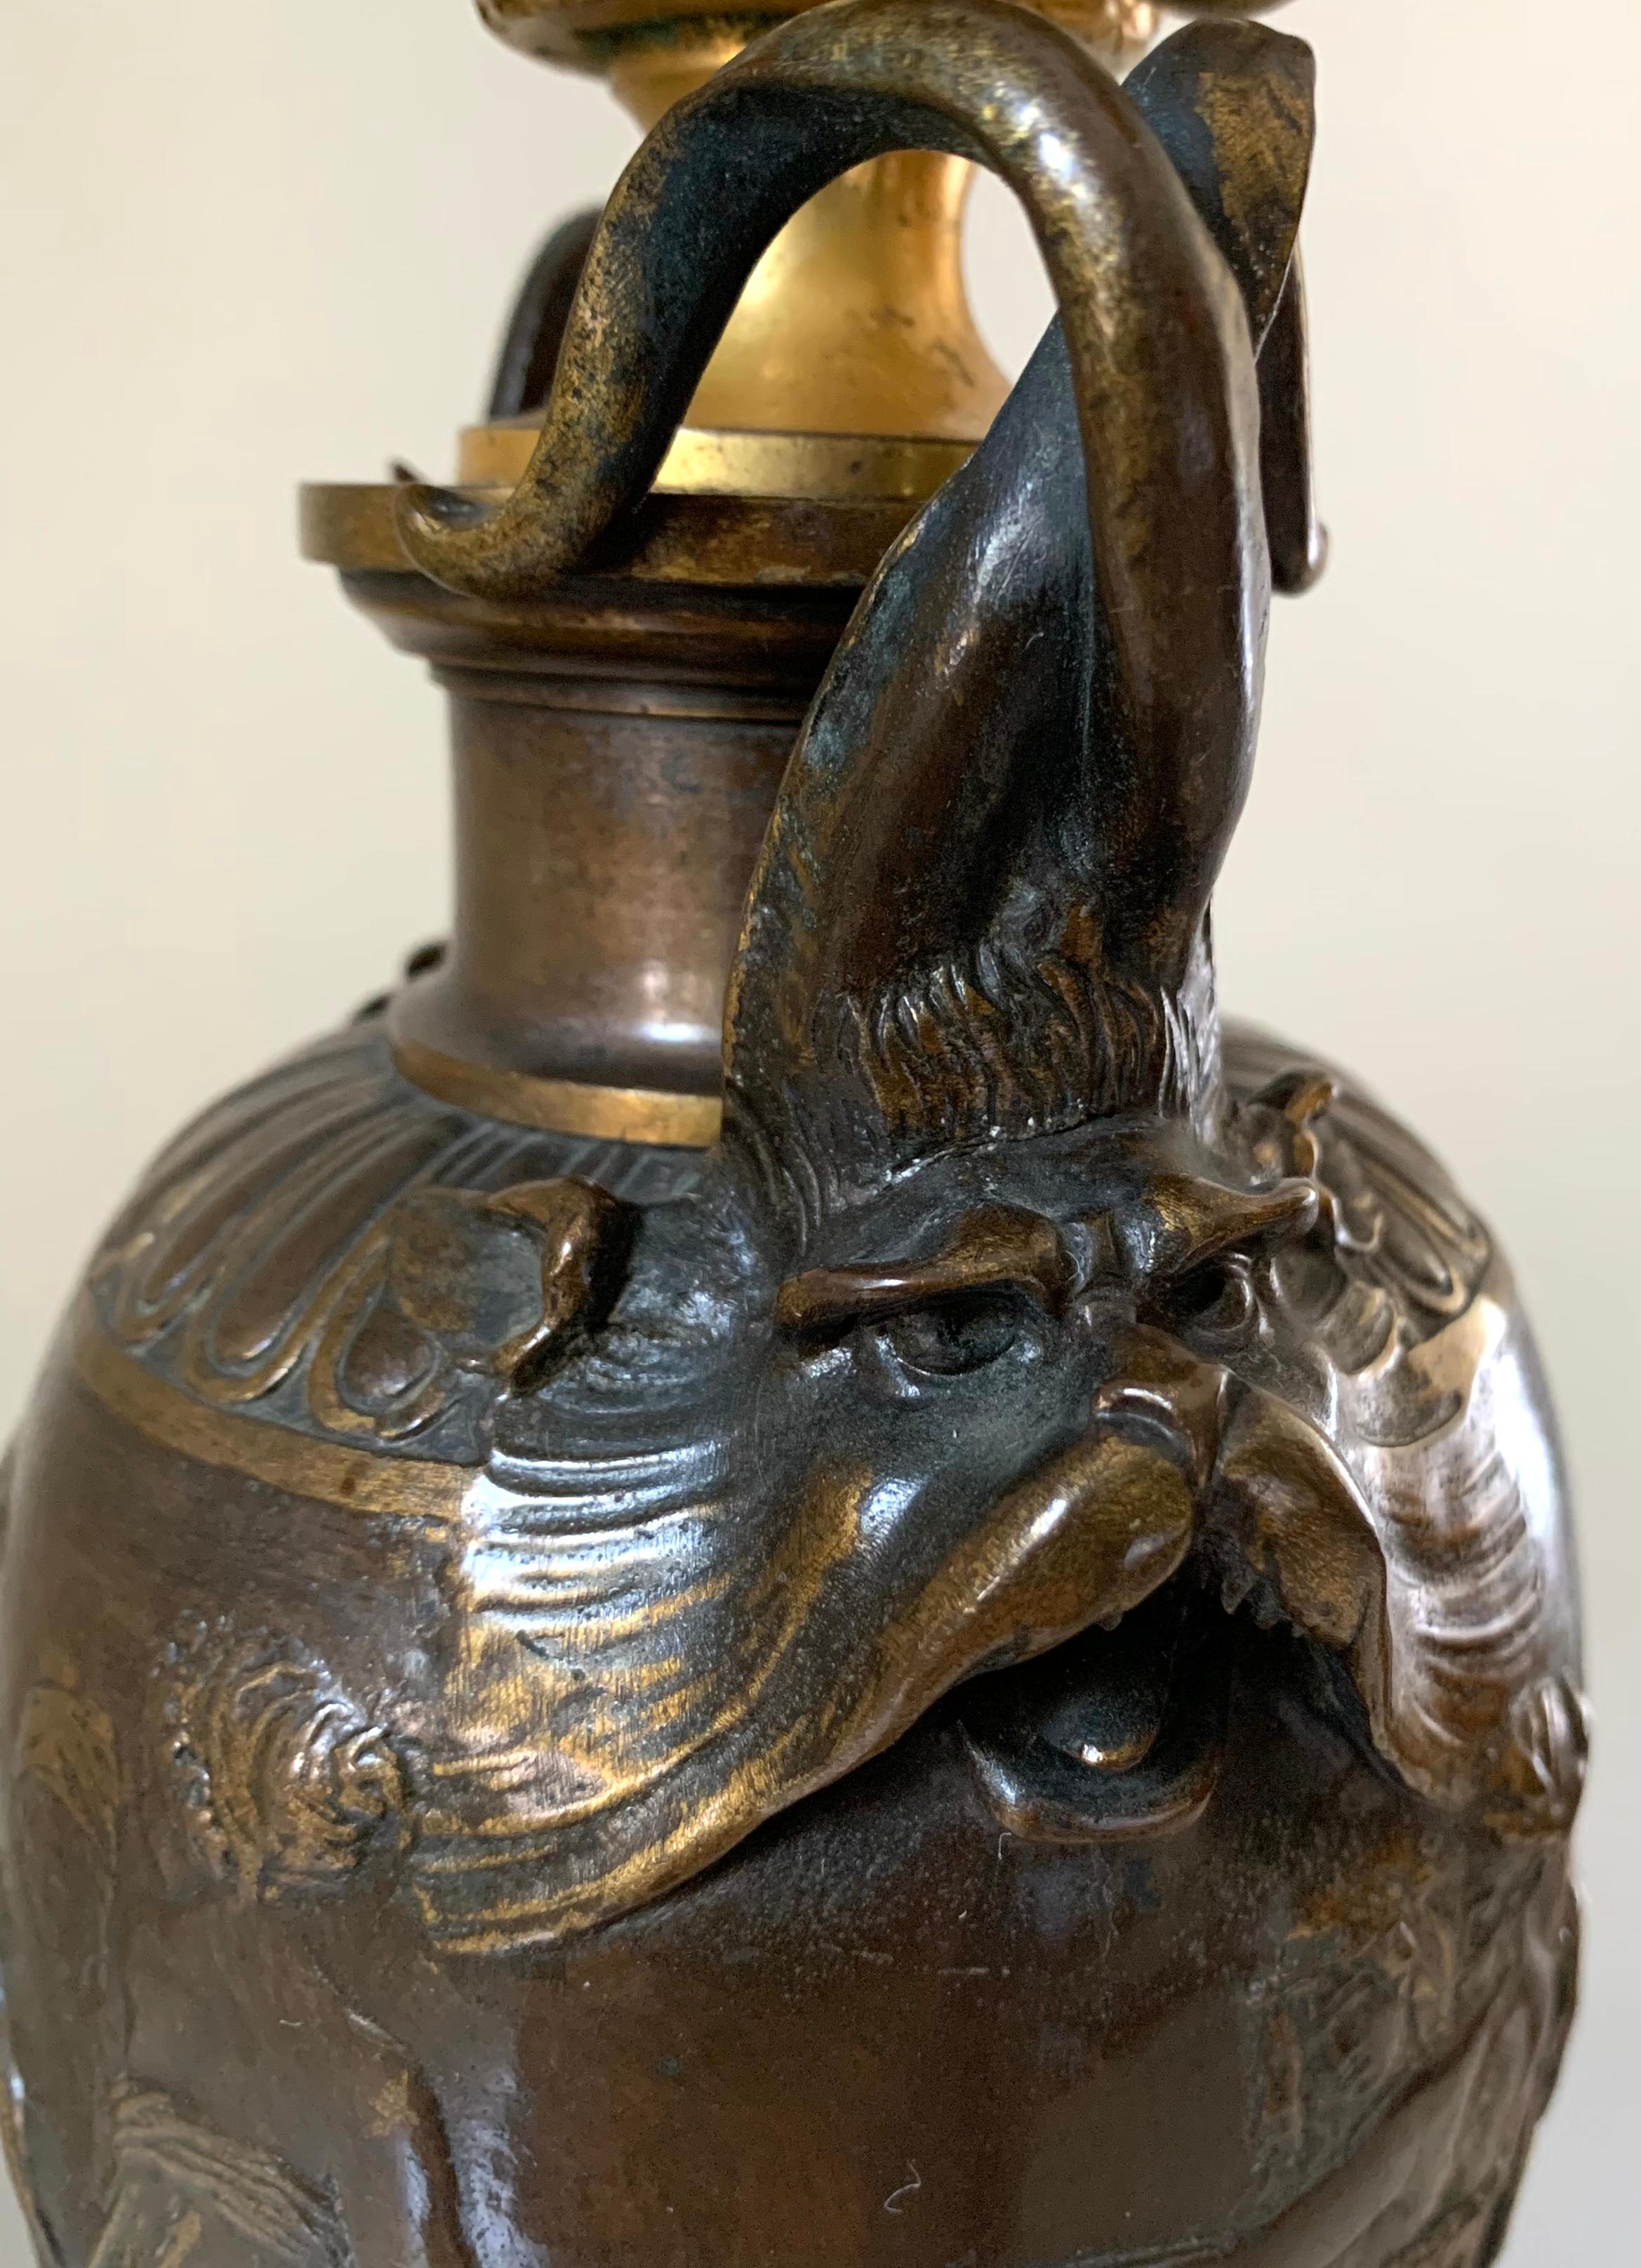 Lampe d'époque Napoléon III signée F. Barbidienne en bronze doré et patiné, ardoise sculptée à quatre lumières avec des créatures mythologiques et des vierges classiques grecques.
Circa 1870
Au centre, un superbe vase en bronze patiné de qualité